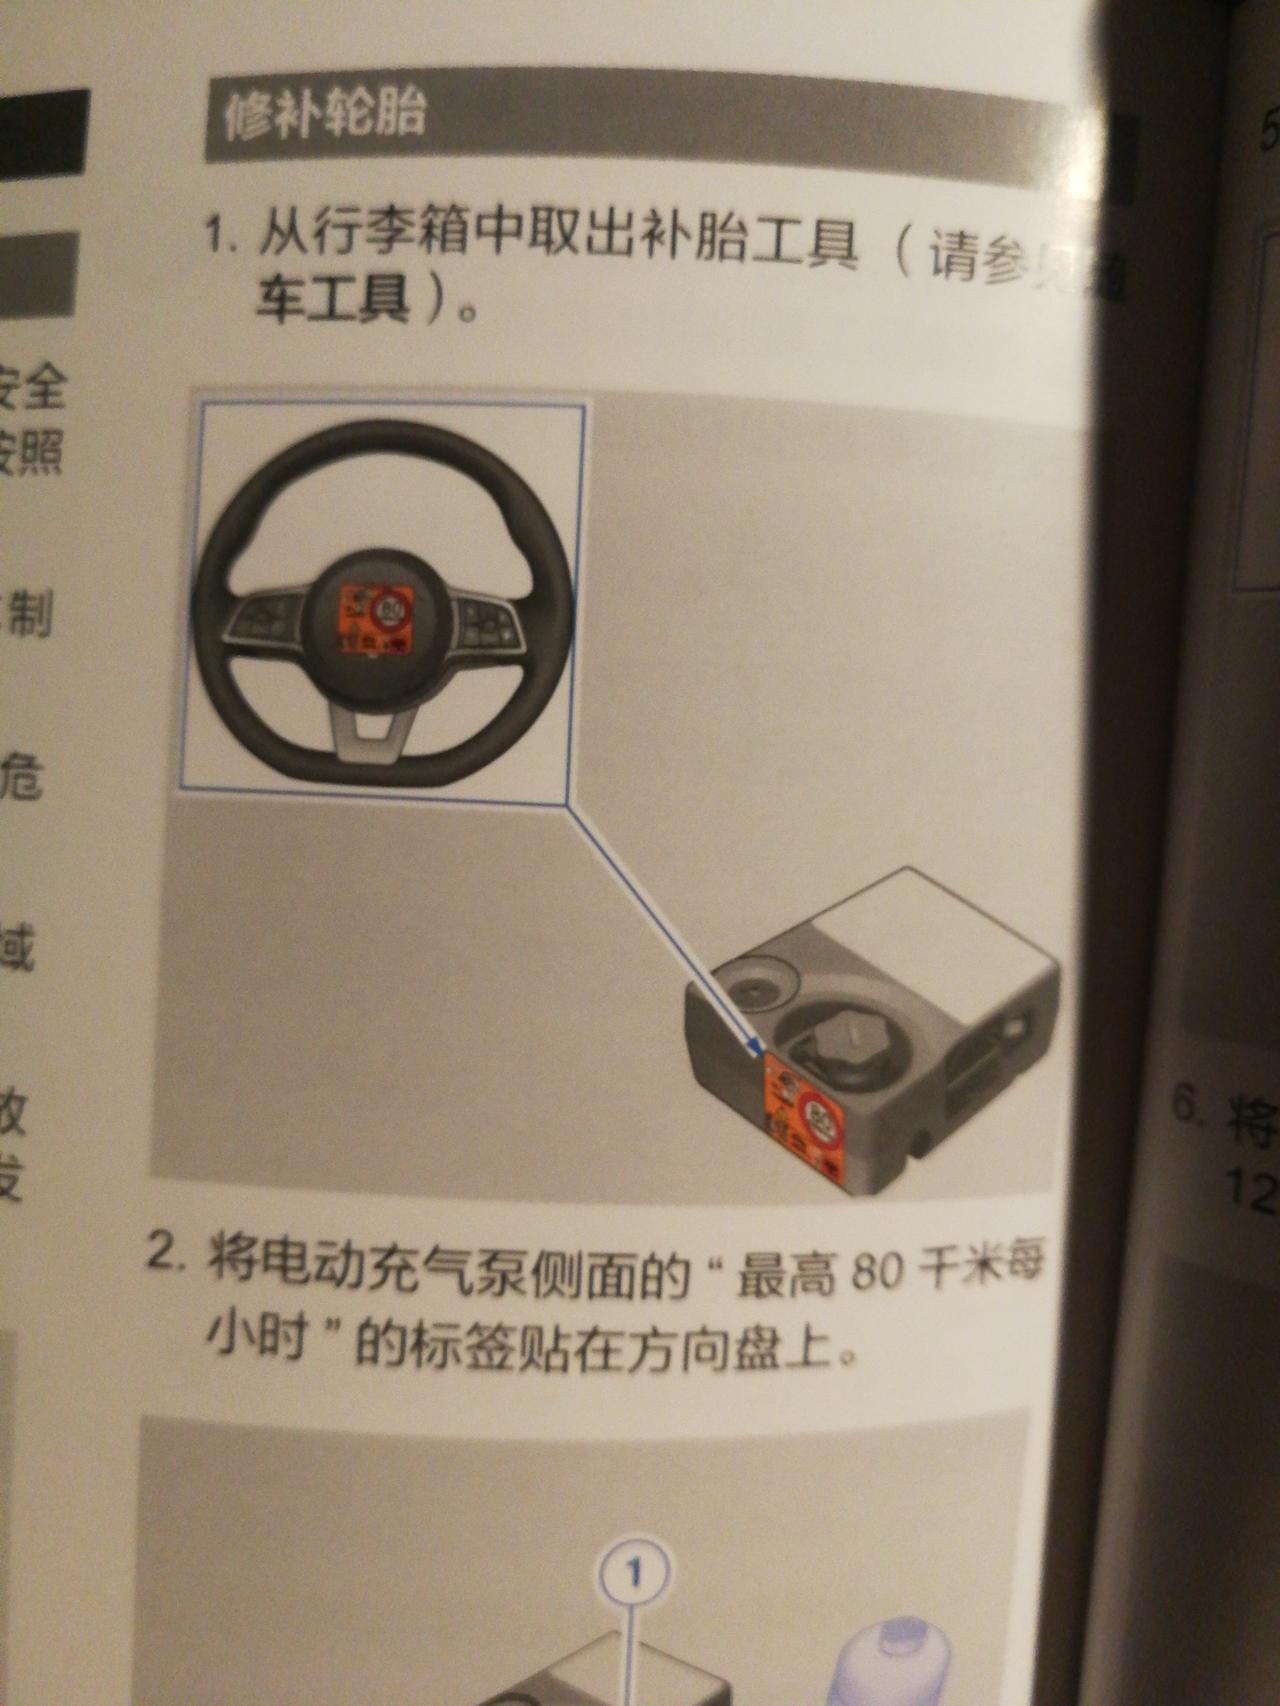 腾势X PHEV 说明书上说  修补轮胎时候要把充气泵侧面的标签贴在方向盘上呢❓